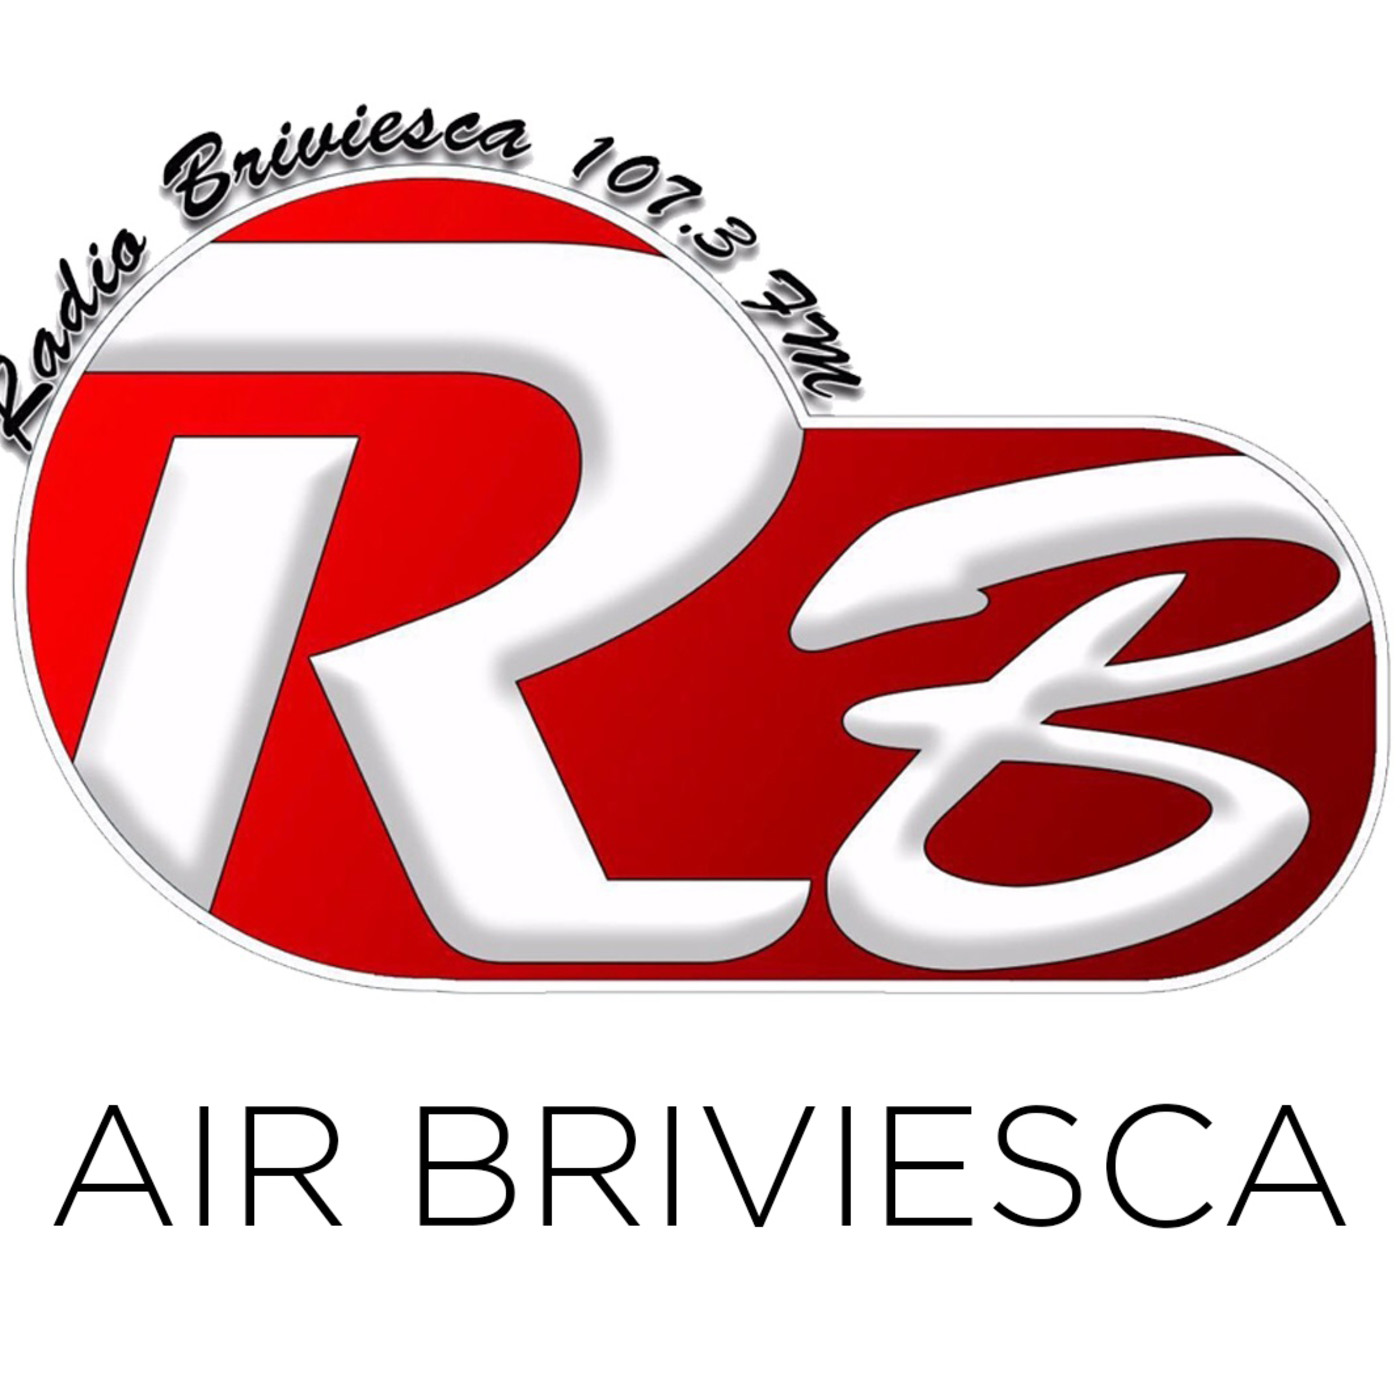 Air Briviesca 29/04/2018